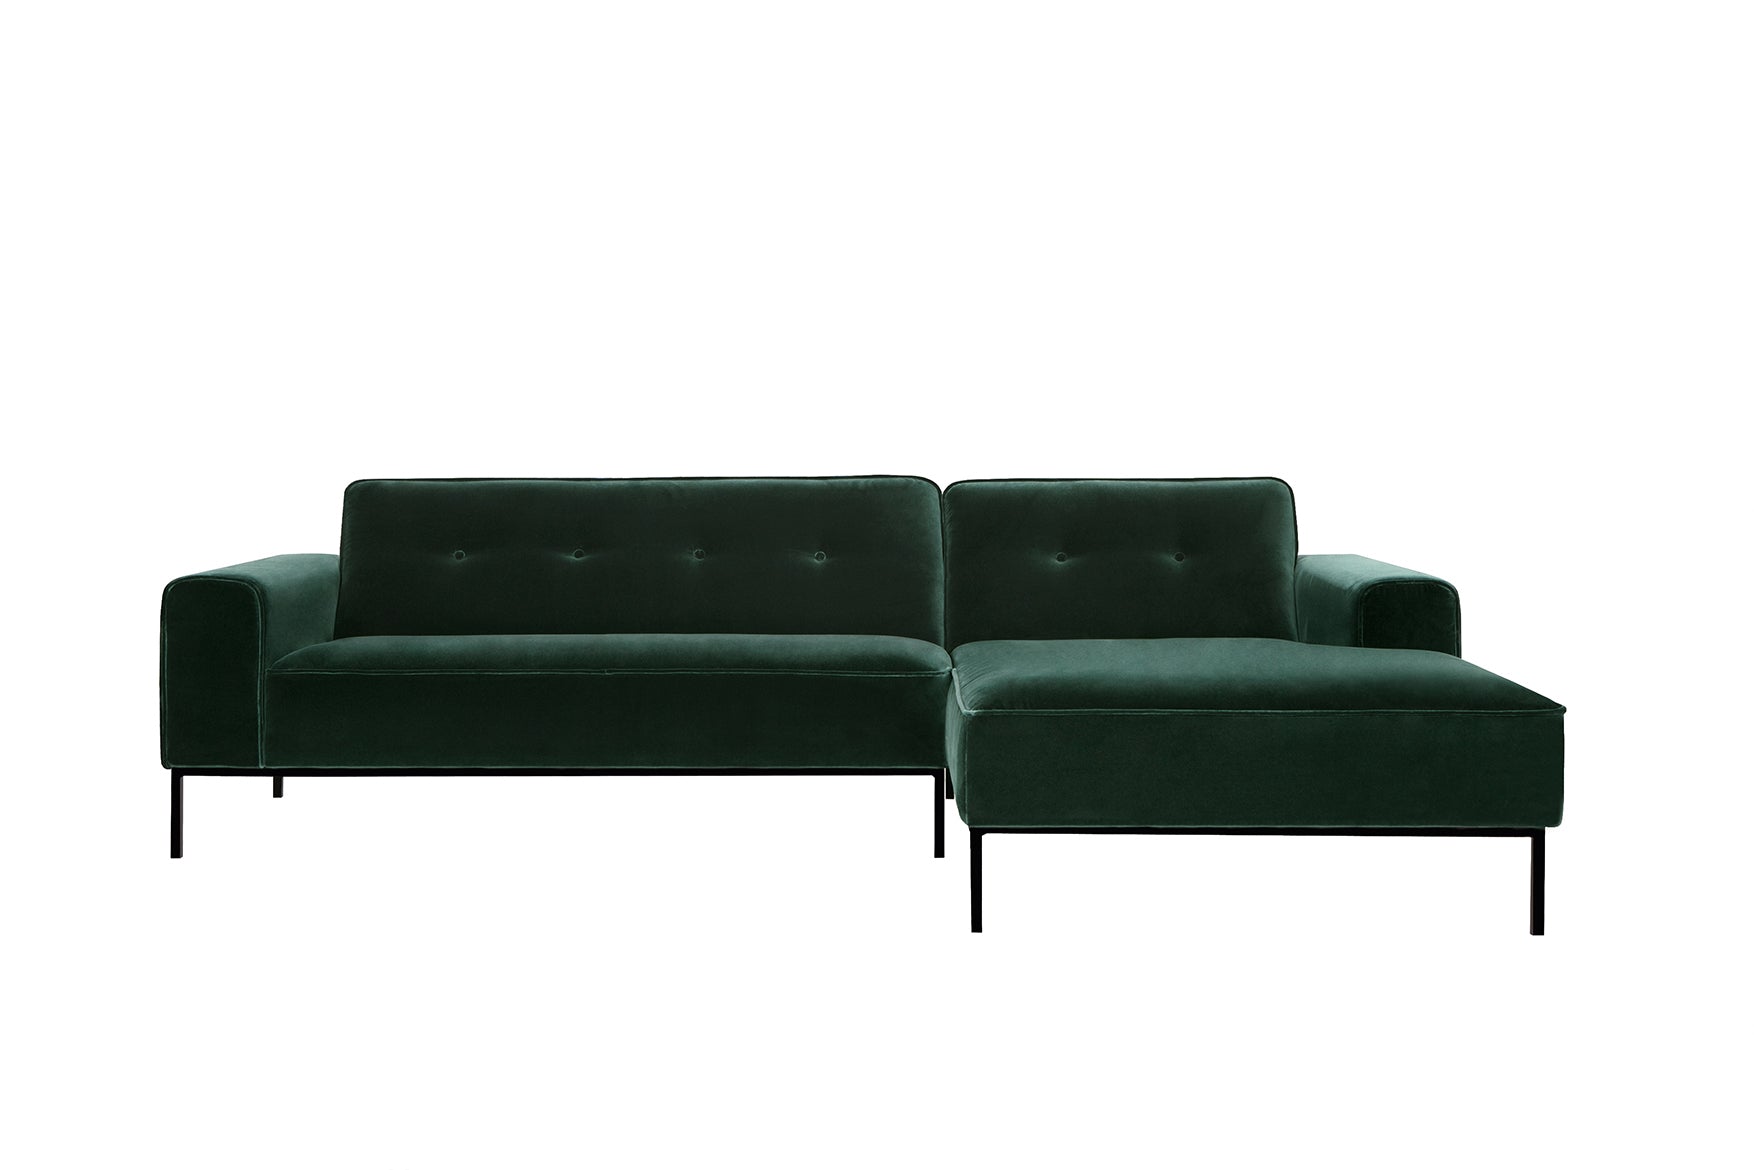 Mastrella Vezia Set 2 Corner Sofa with Buttons Right